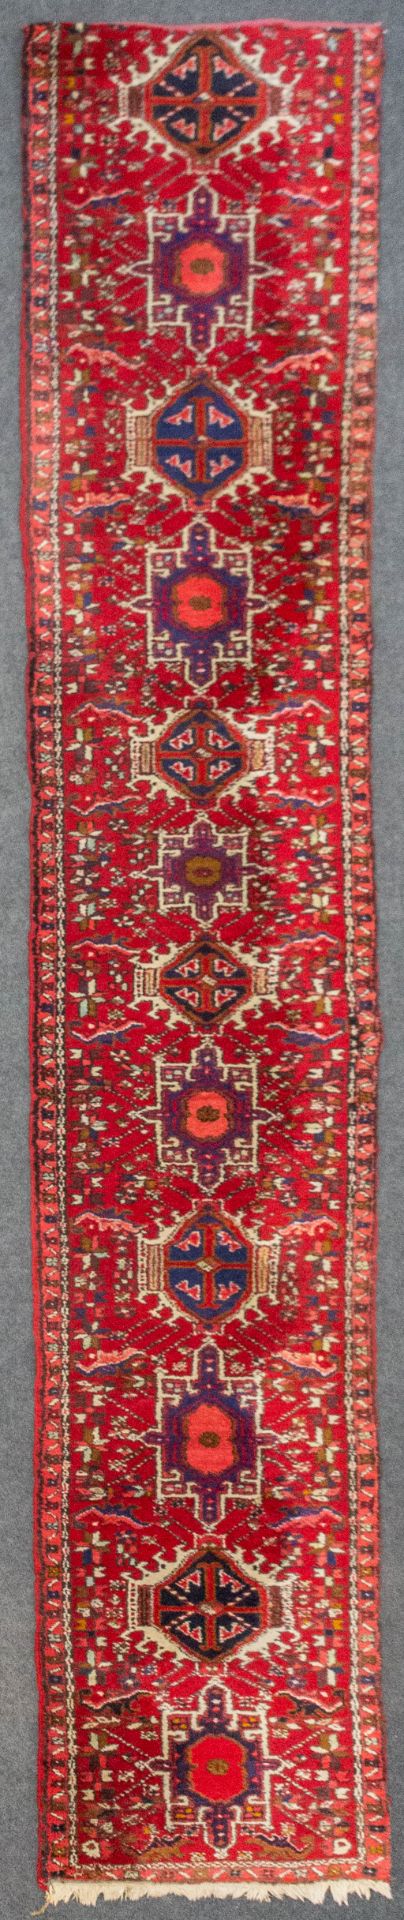 An Oriental hand-made carpet, Hamadan. (389 x 71 cm).